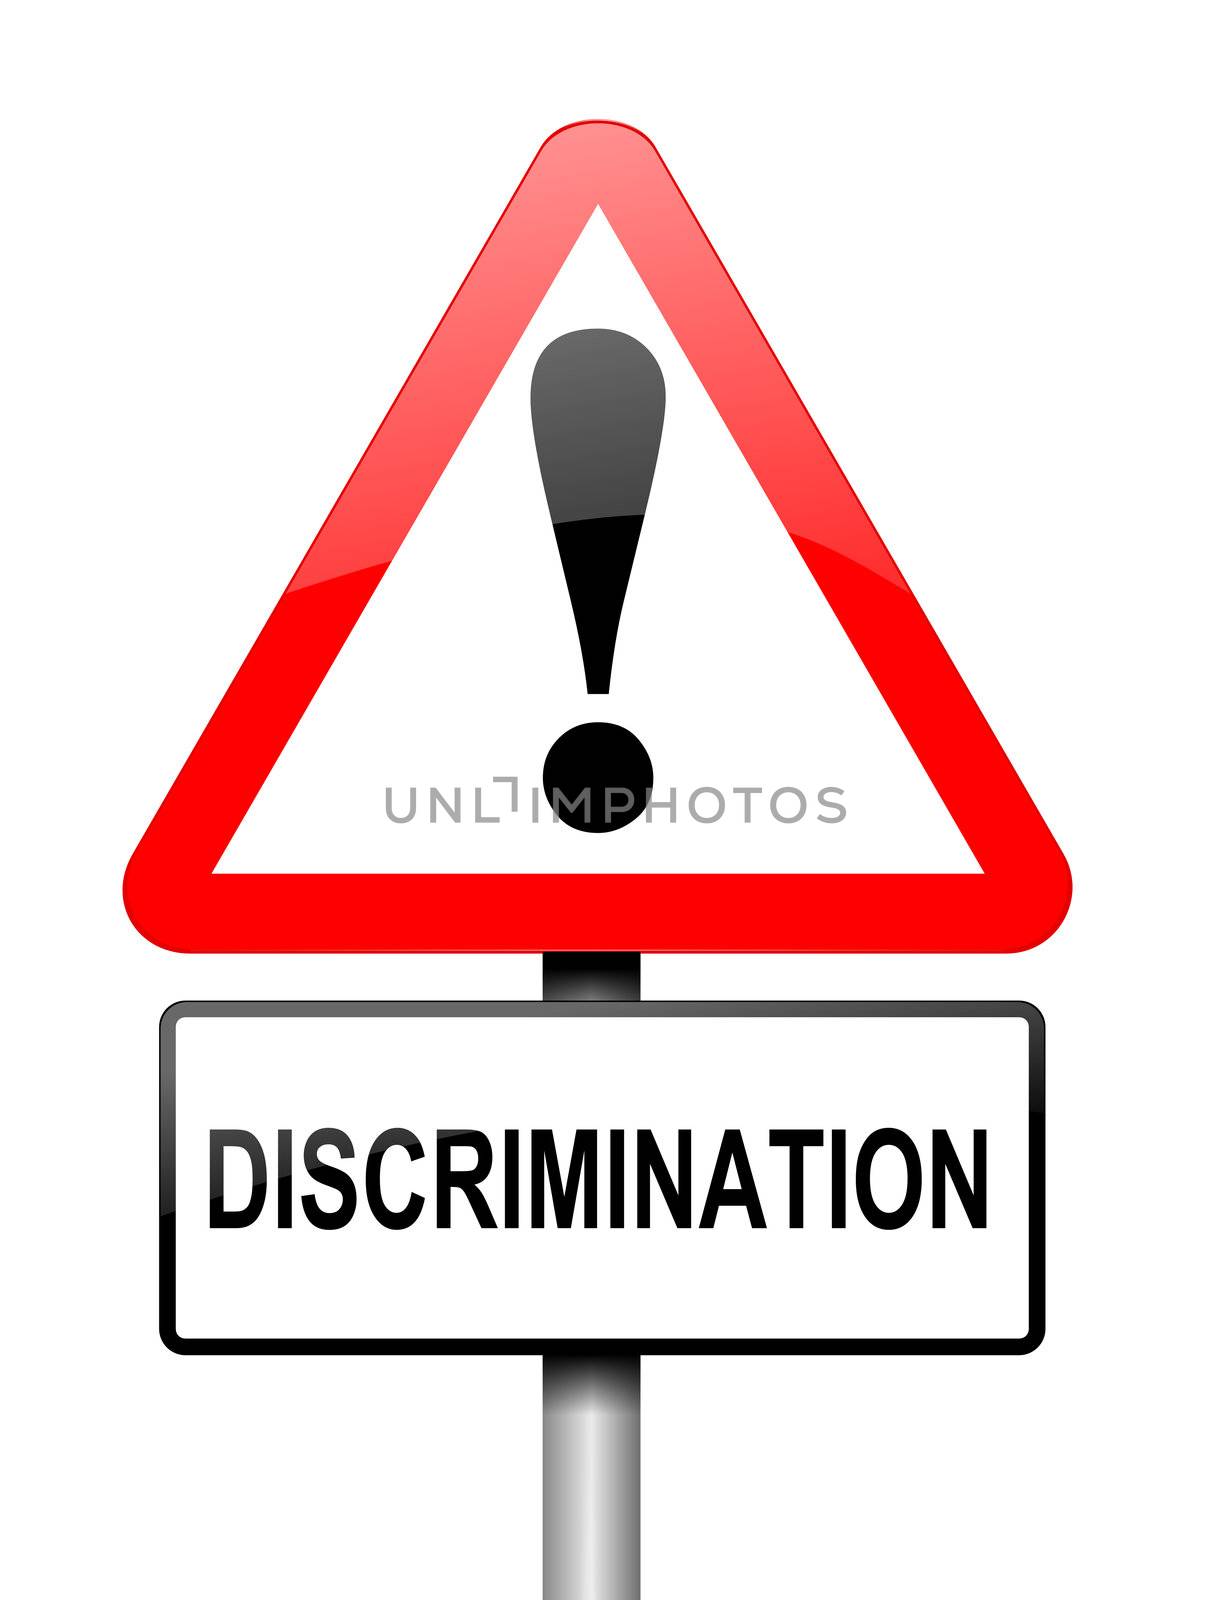 Discrimination alert concept by 72soul